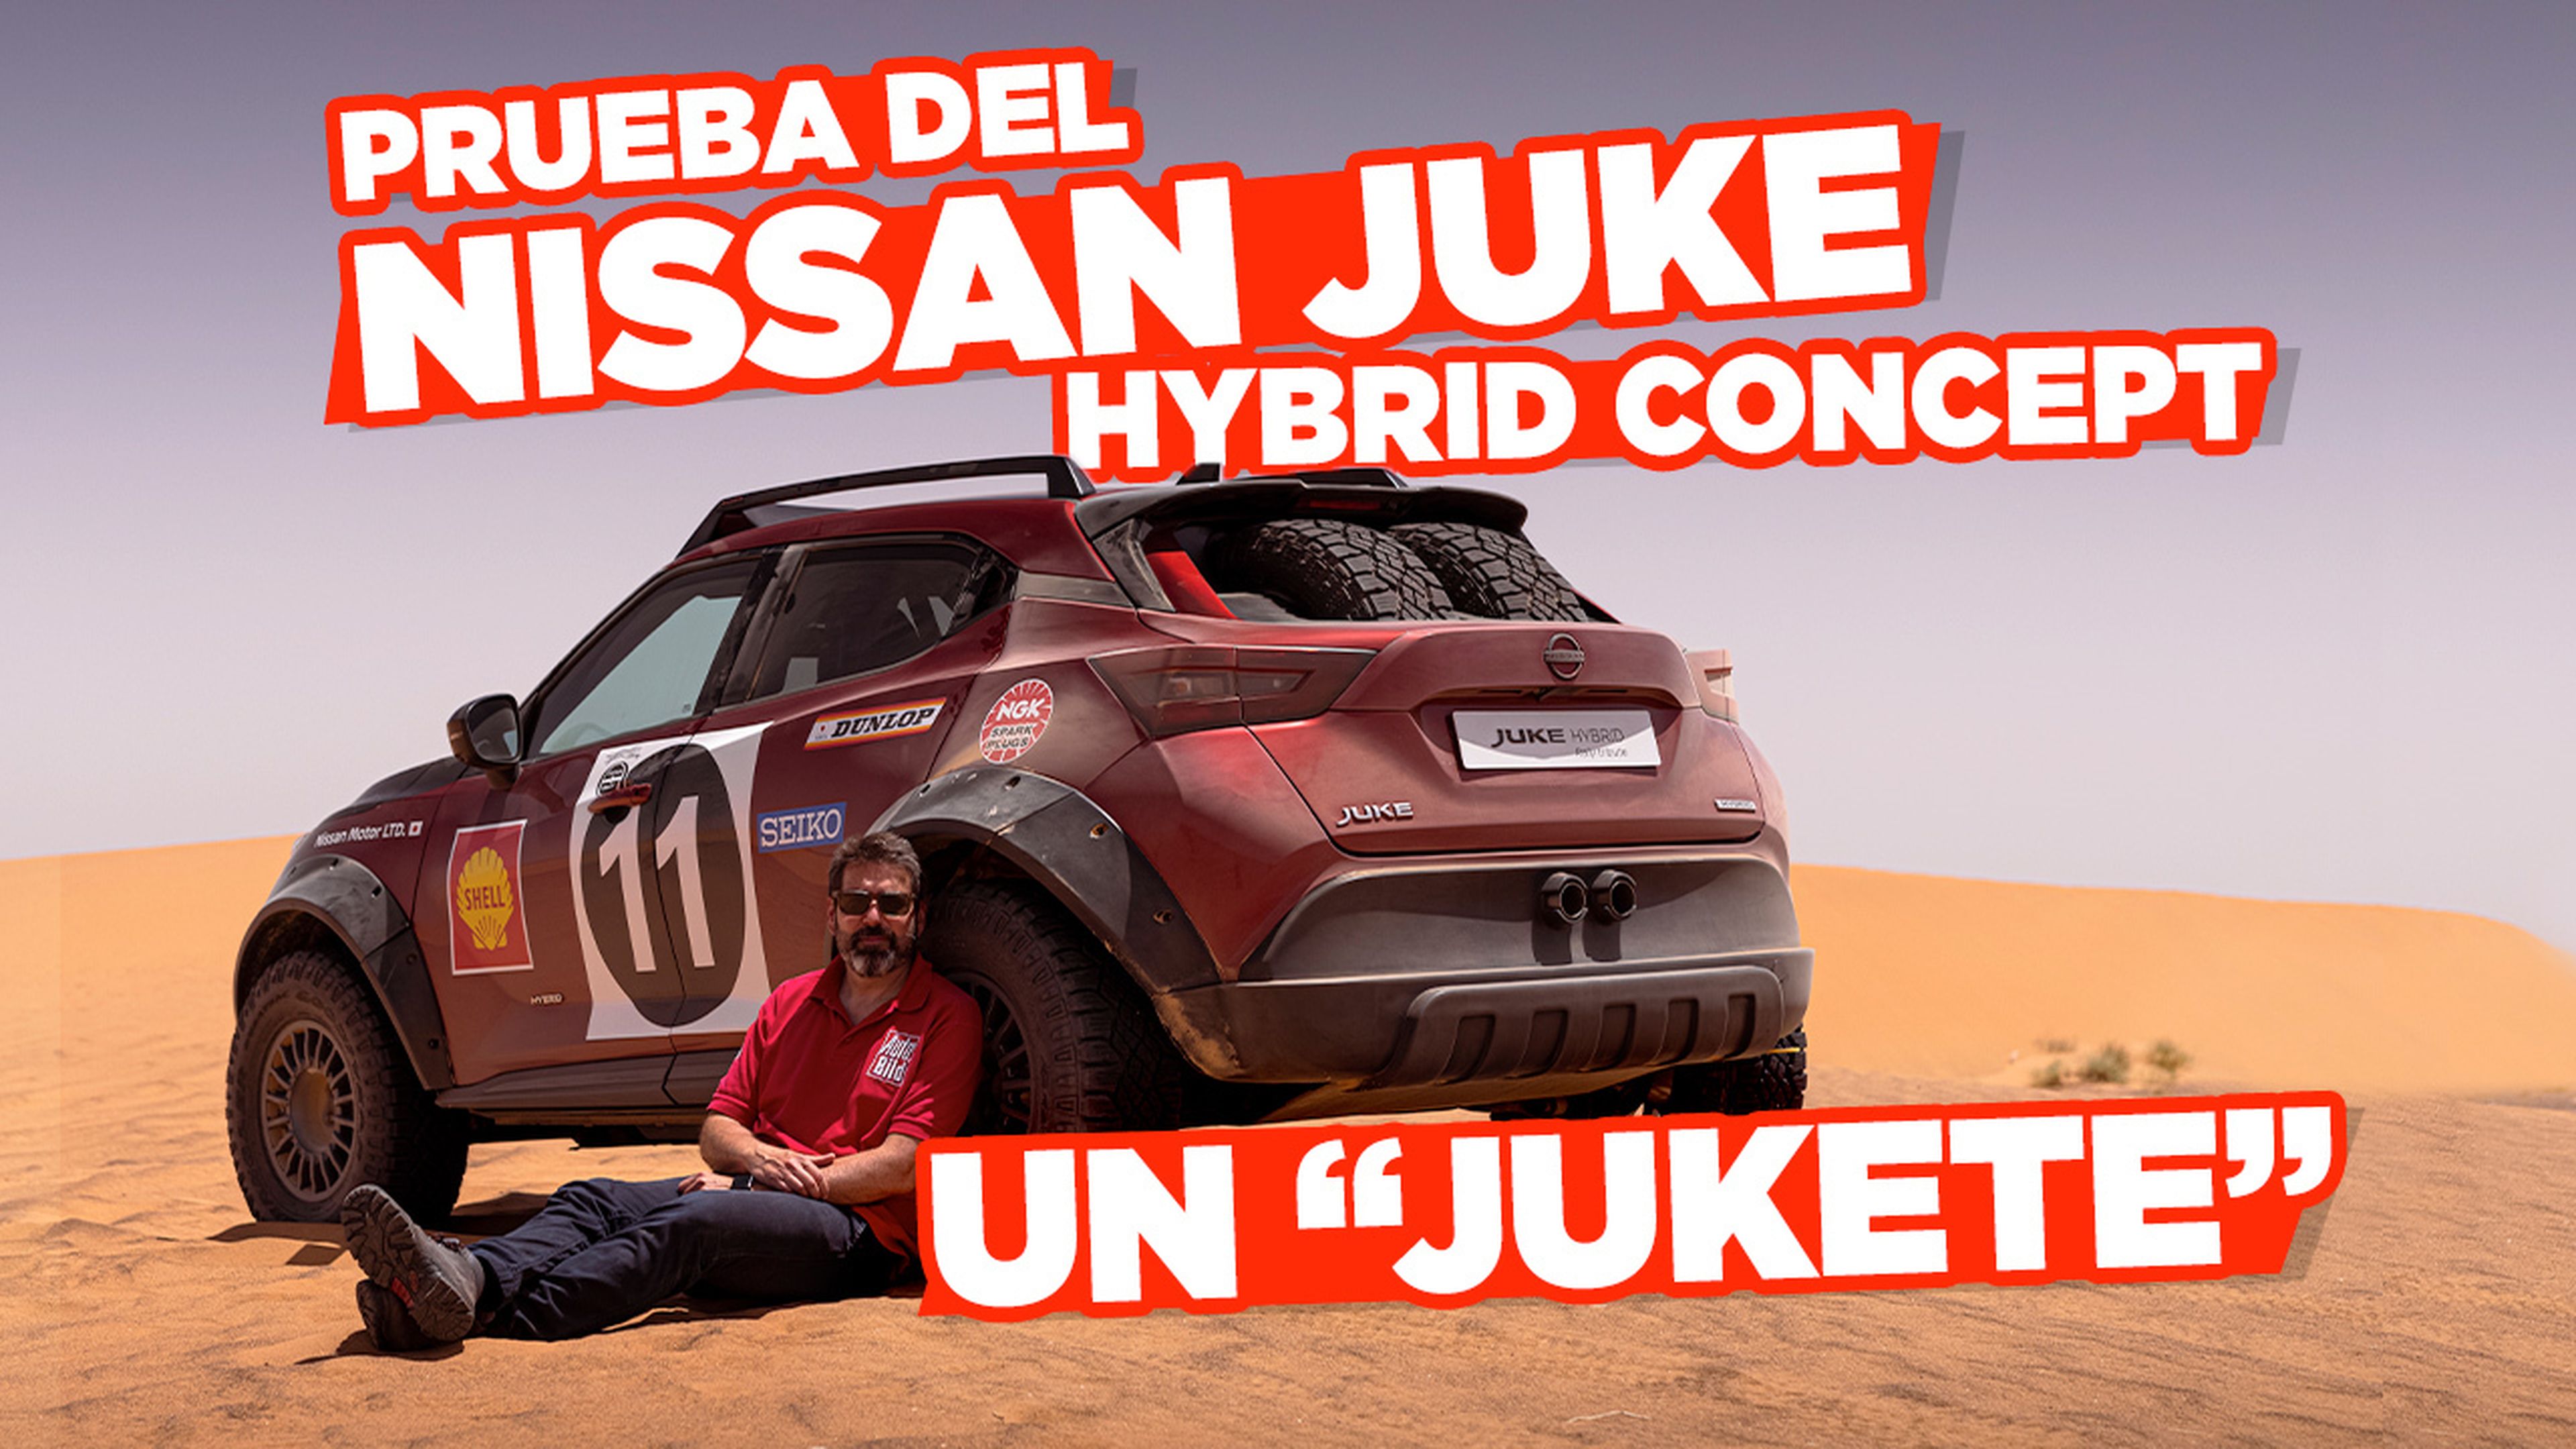 VÍDEO: Prueba Nissan Juke Hybrid Concept en el desierto